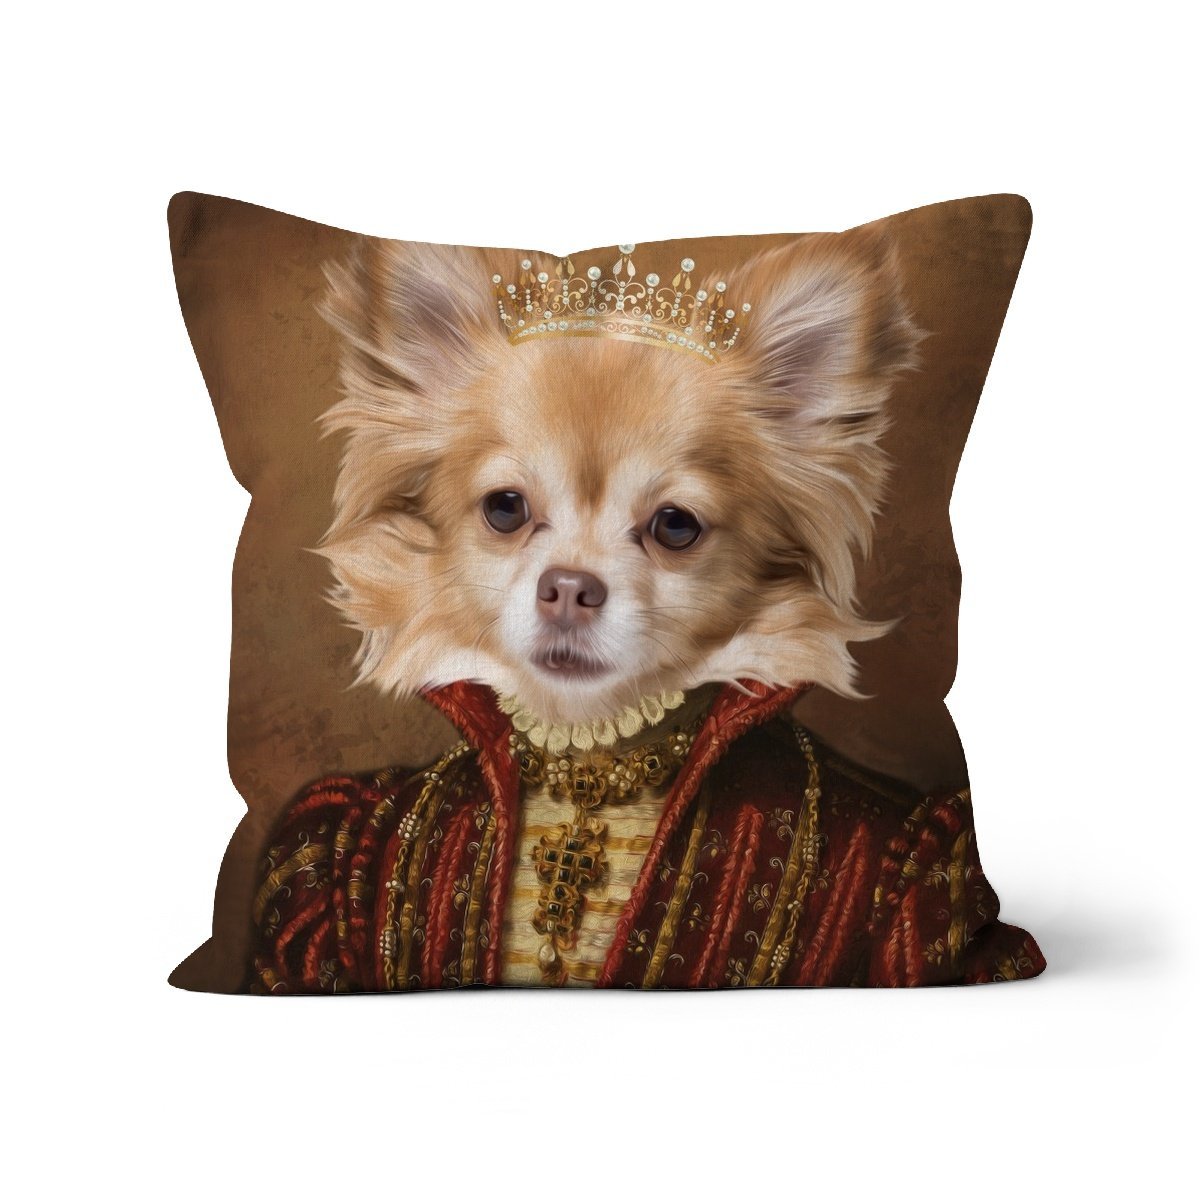 The Spanish Princess: Custom Pet Throw Pillow - Paw & Glory - #pet portraits# - #dog portraits# - #pet portraits uk#paw & glory, pet portraits pillow,dog on pillow, custom cat pillows, pet pillow, custom pillow of pet, pillow personalized